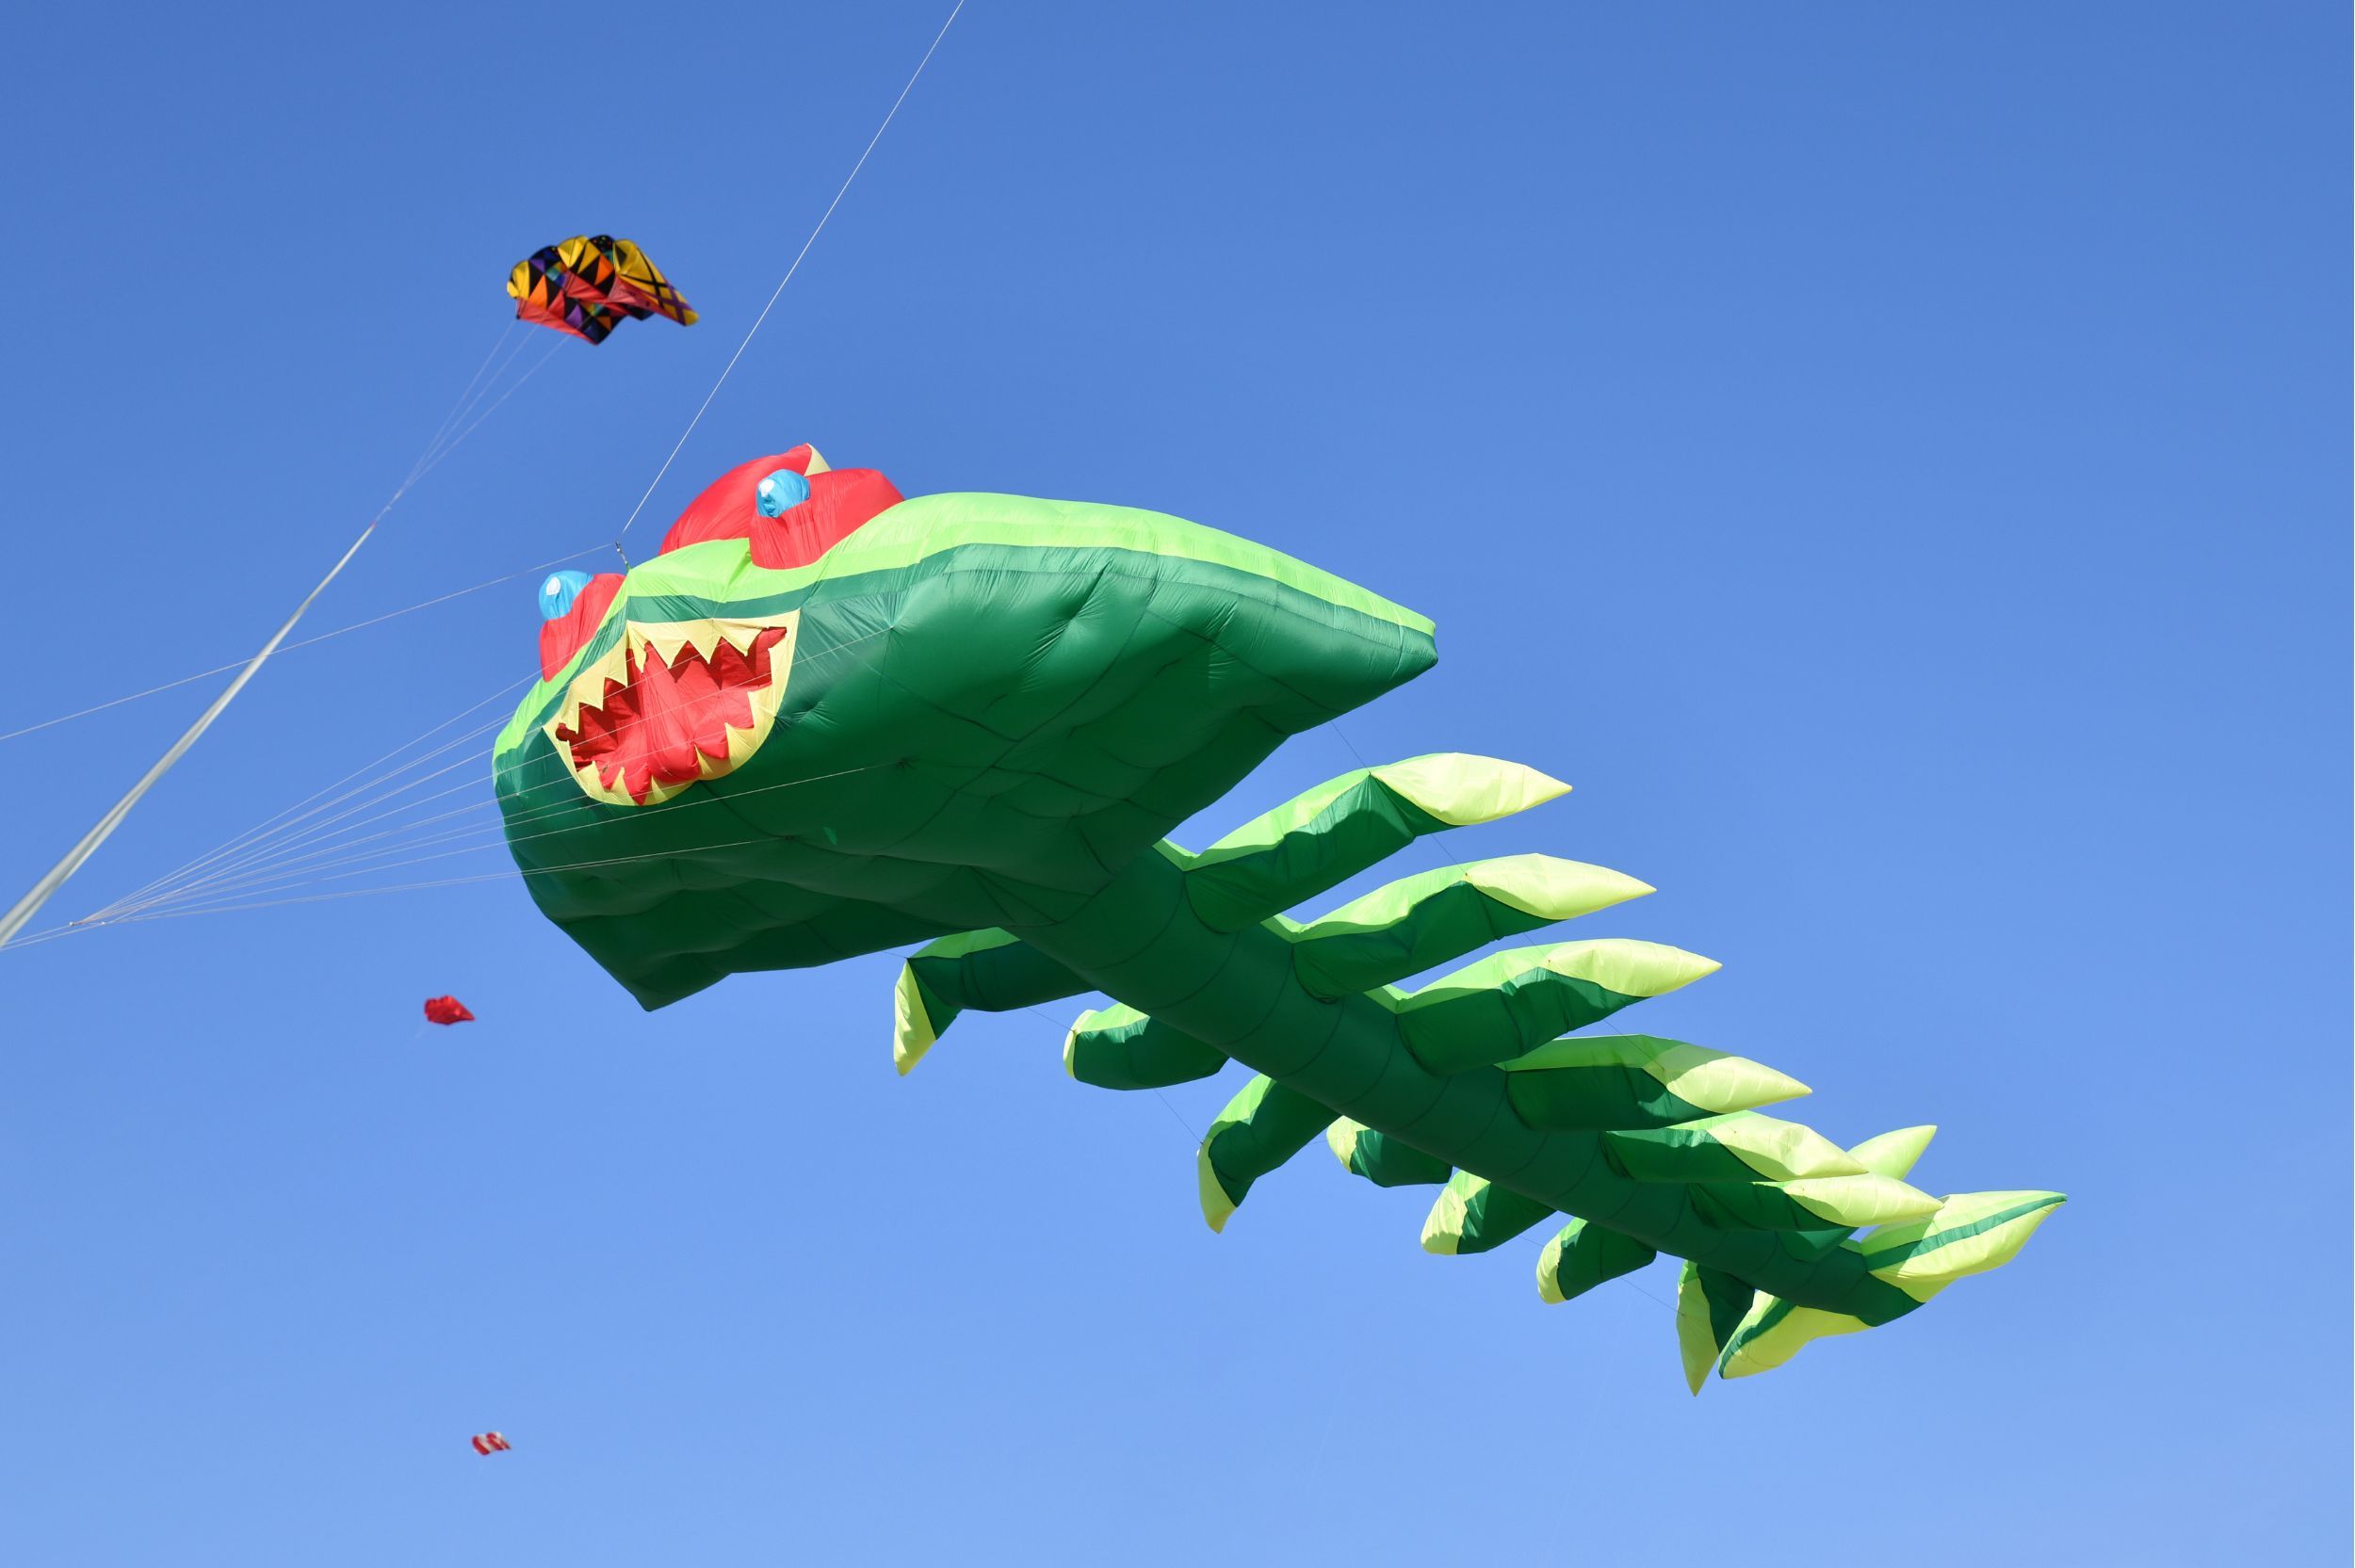 International Kite Festival, Dieppe, France